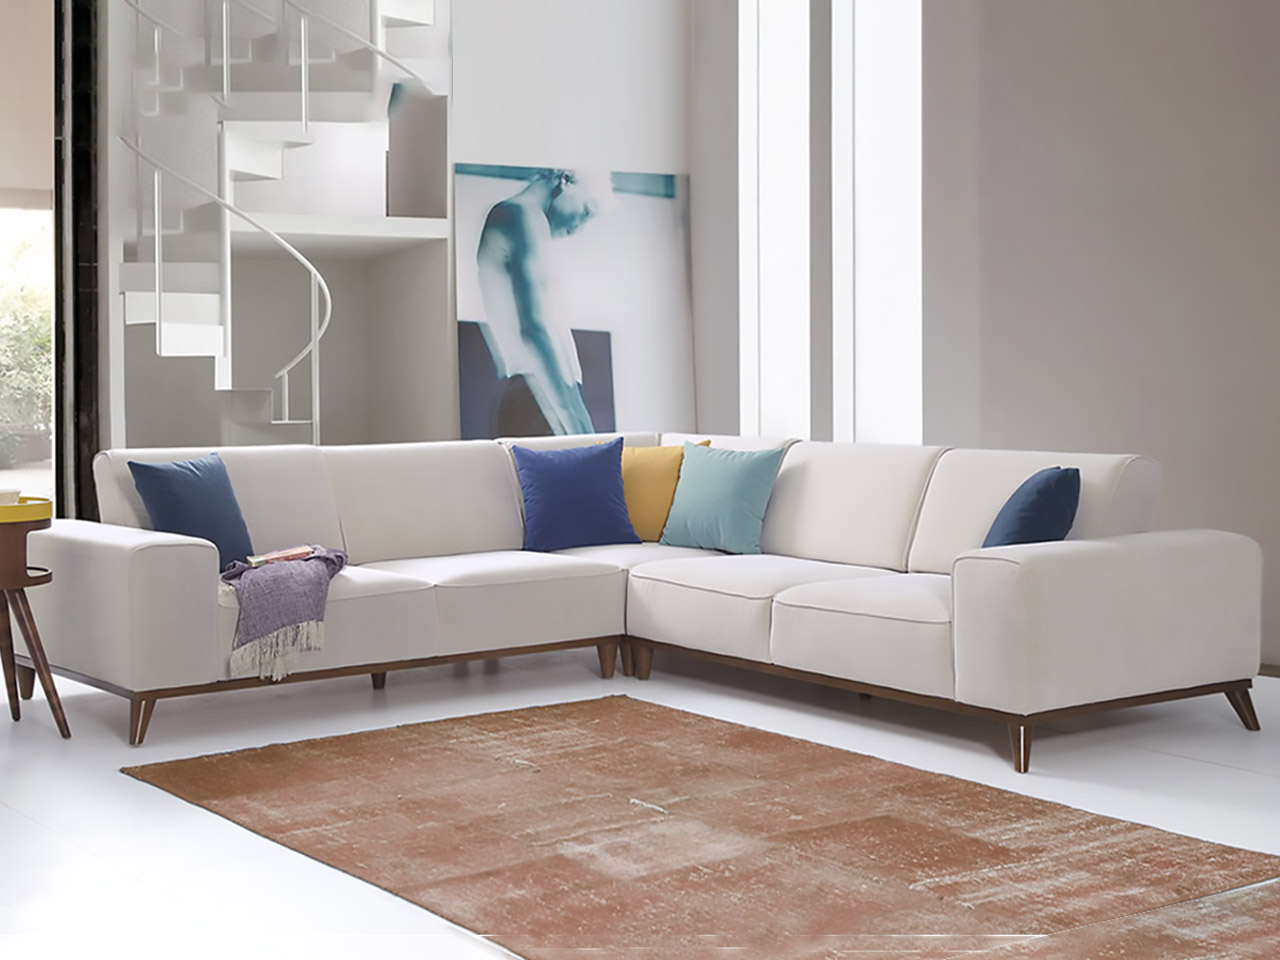 firenze modern sofa bed